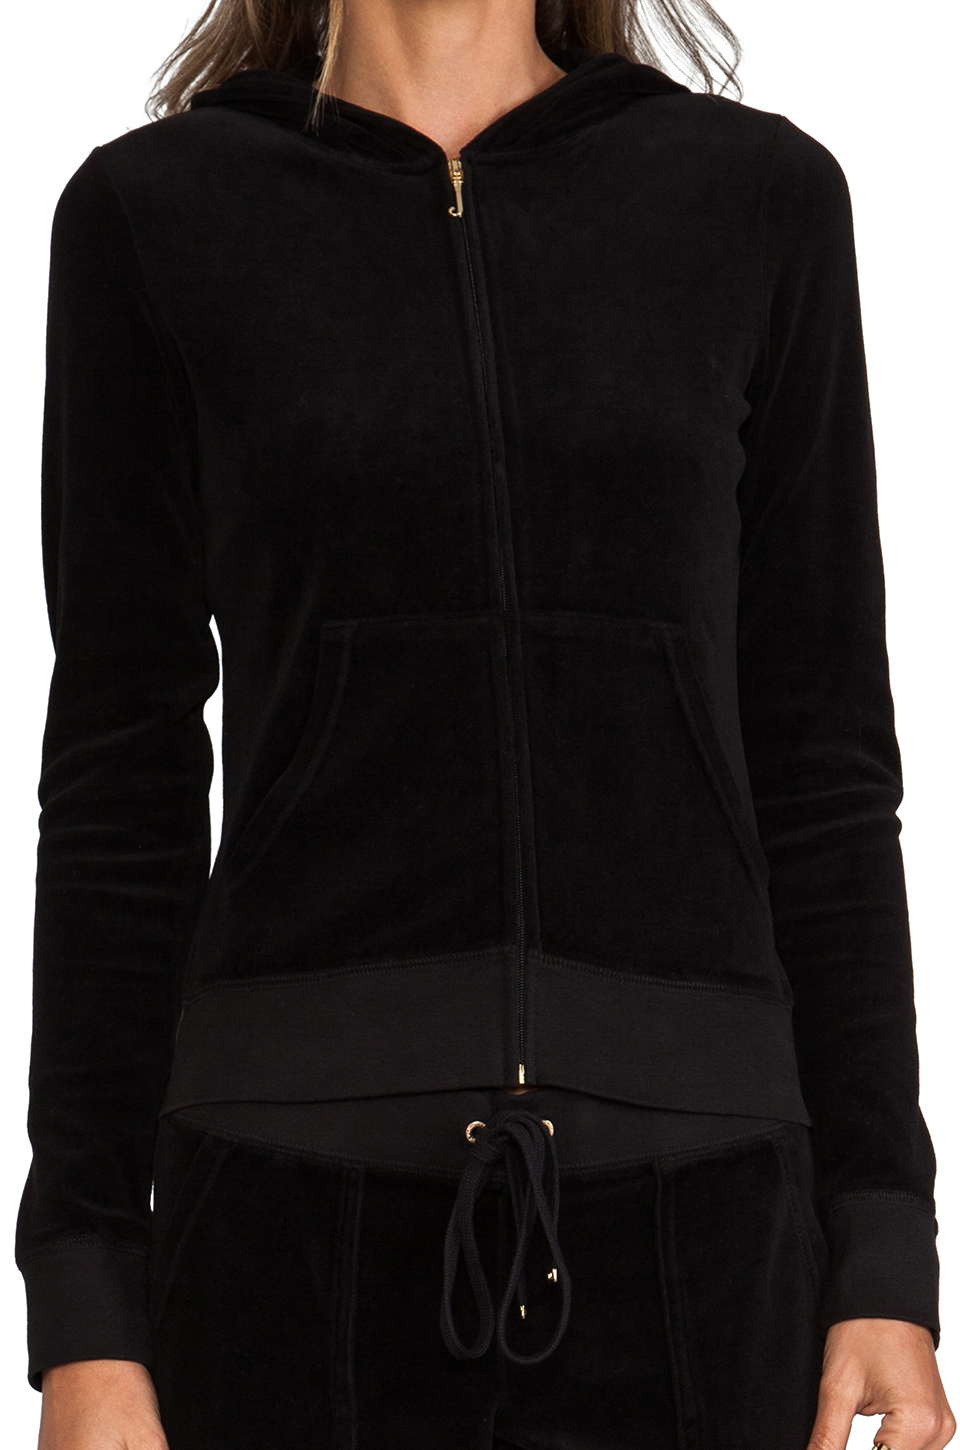 Lyst - Juicy Couture Classic Velour Long Sleeve Zip Hoodie in Black